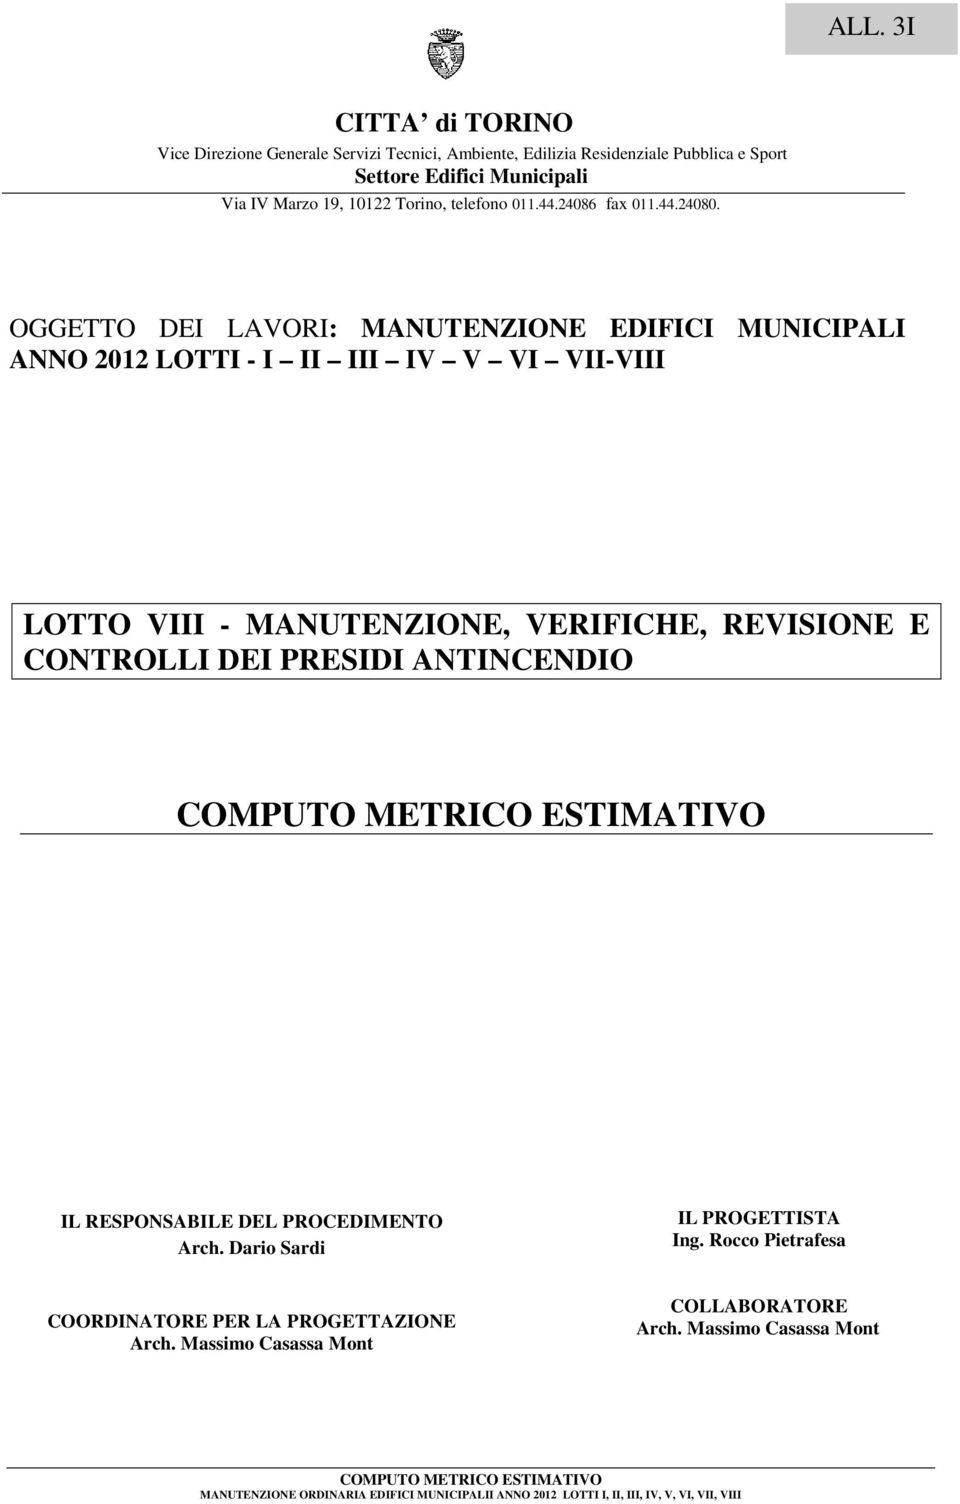 OGGETTO DEI LAVORI: MANUTENZIONE EDIFICI MUNICIPALI ANNO 2012 LOTTI - I II III IV V VI VII-VIII LOTTO VIII - MANUTENZIONE, VERIFICHE, REVISIONE E CONTROLLI DEI PRESIDI ANTINCENDIO